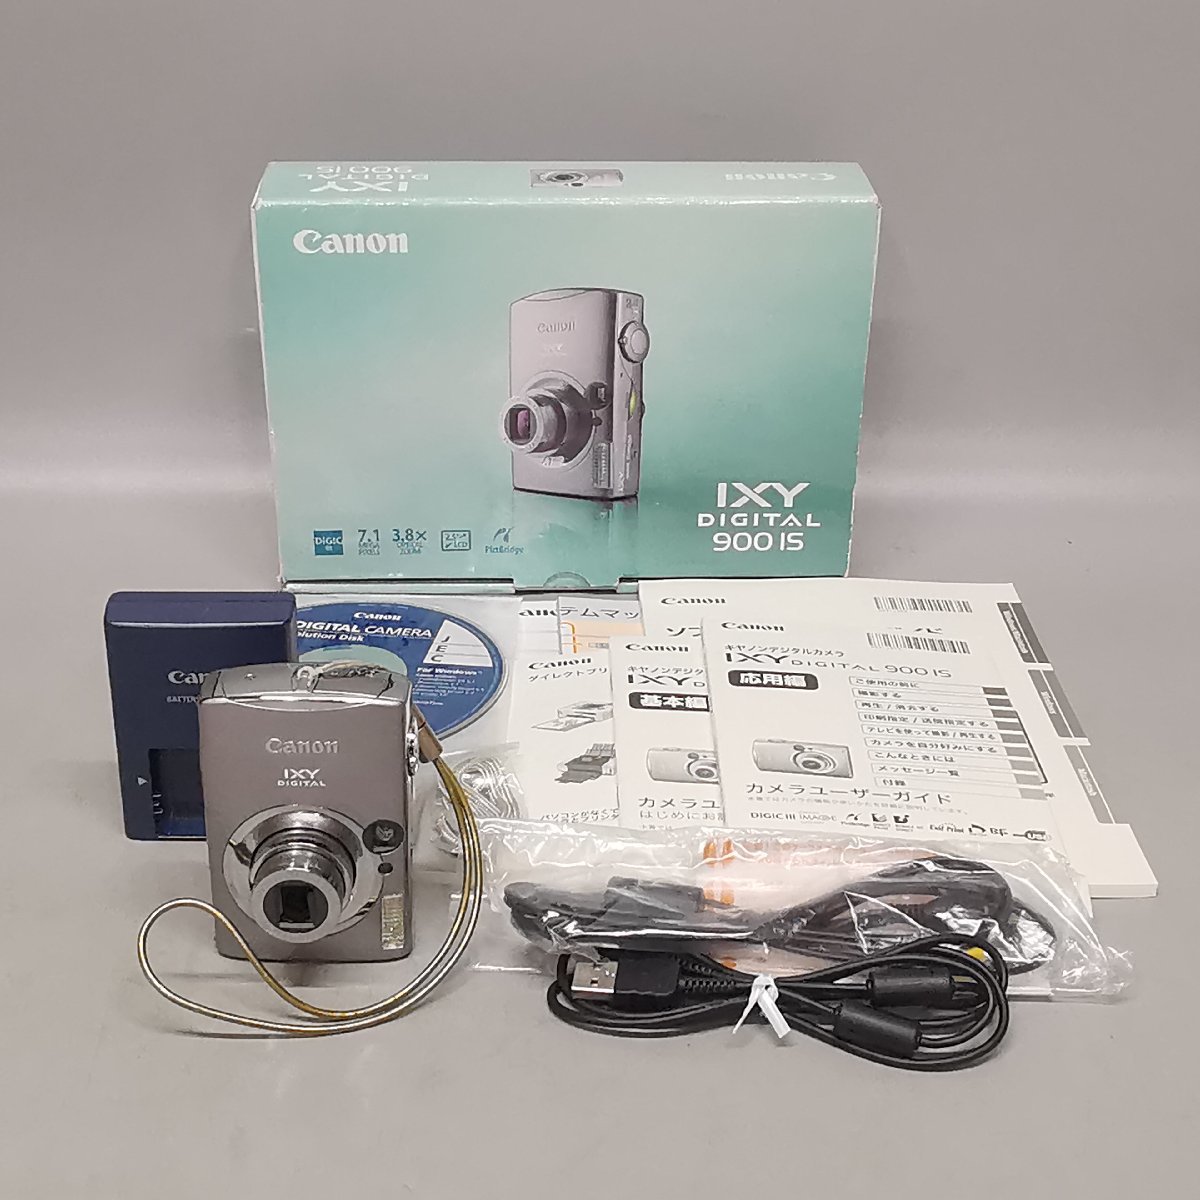 動作品 Canon キヤノン IXY DIGITAL 900 IS コンパクトデジタルカメラ